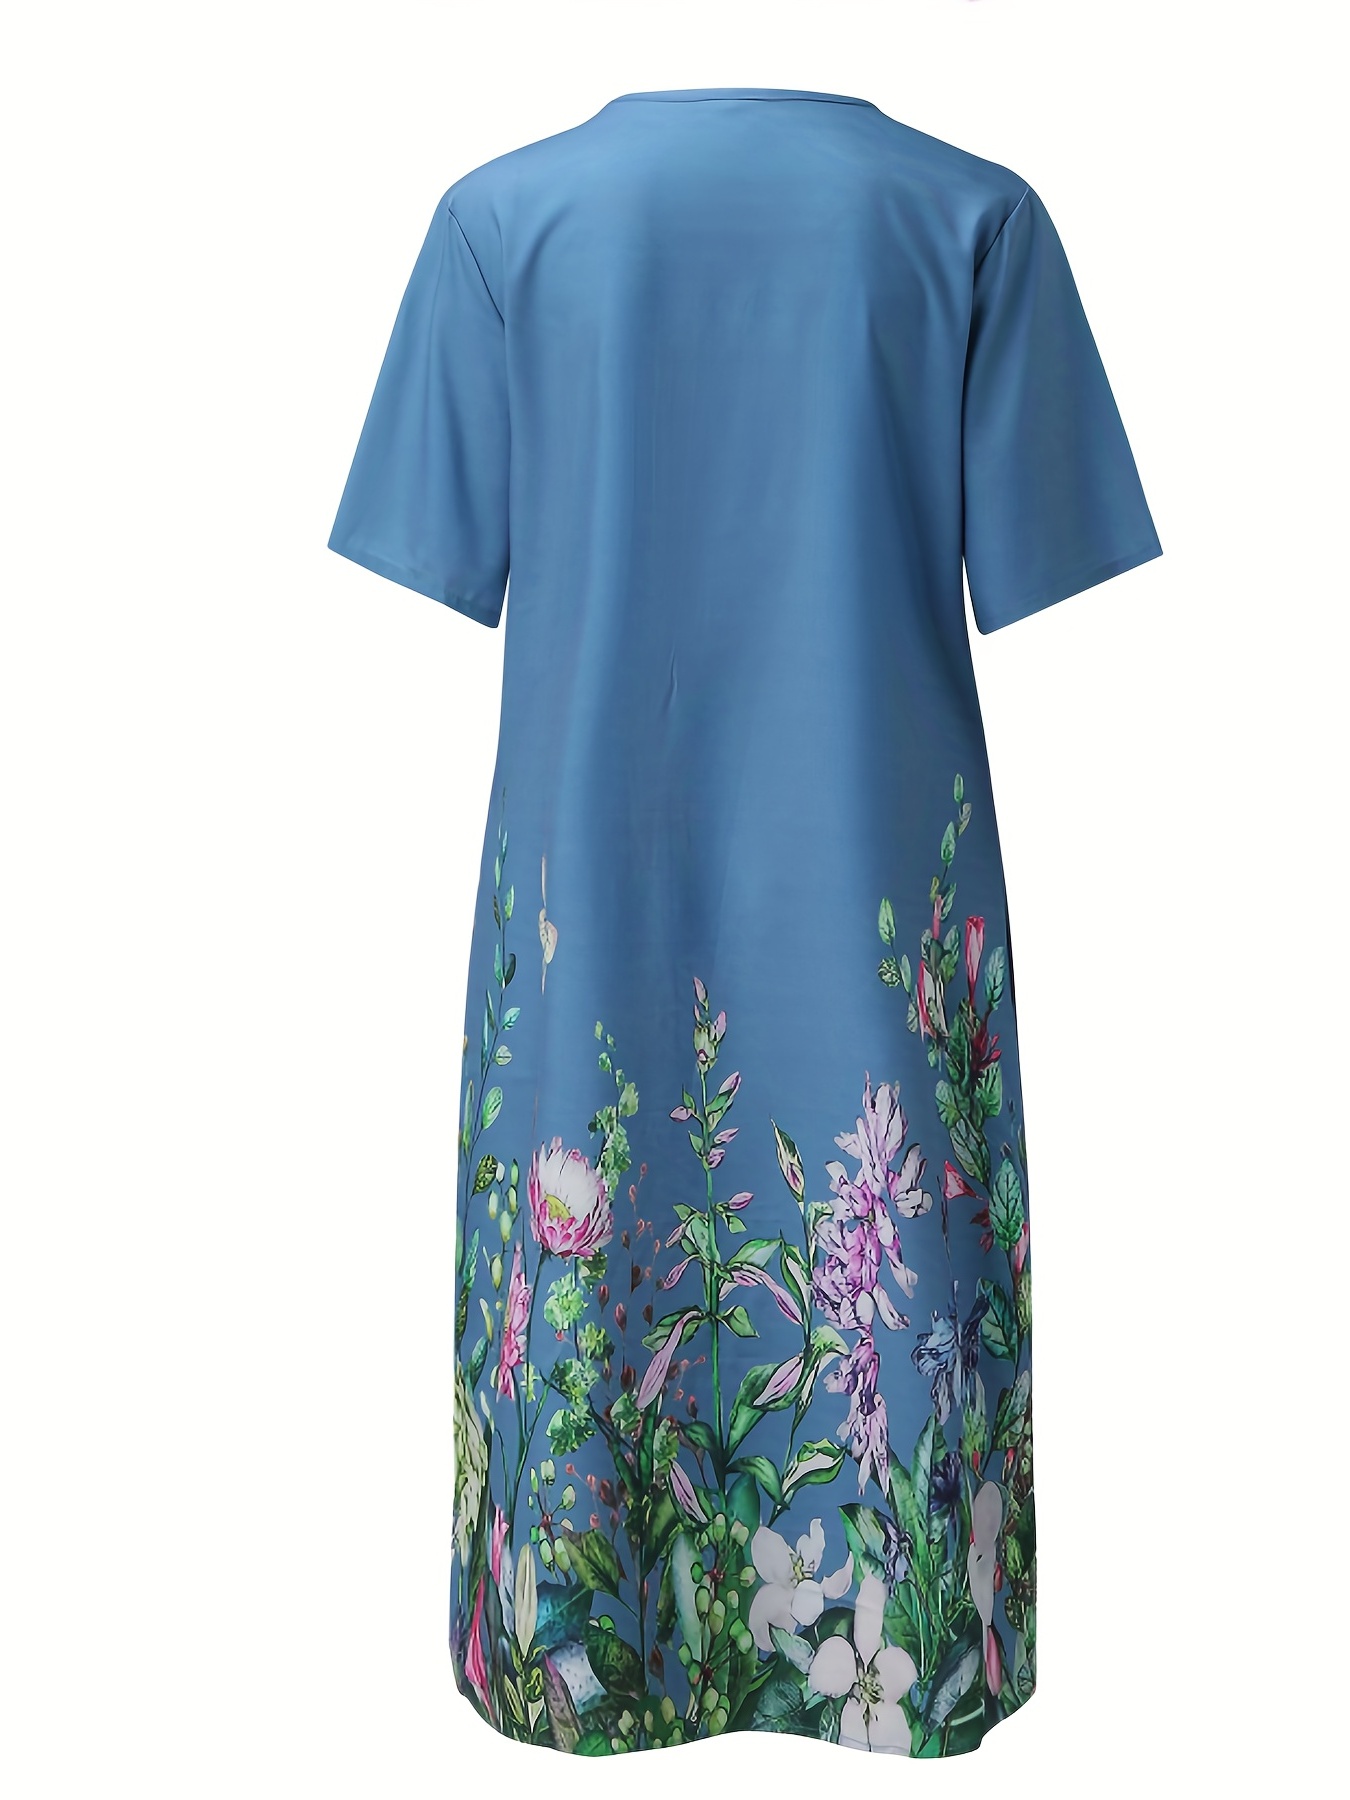 Сукня з квітковим принтом та складками на переду, повсякденна сукня з коротким рукавом та подвійними кишенями, жіночий одяг